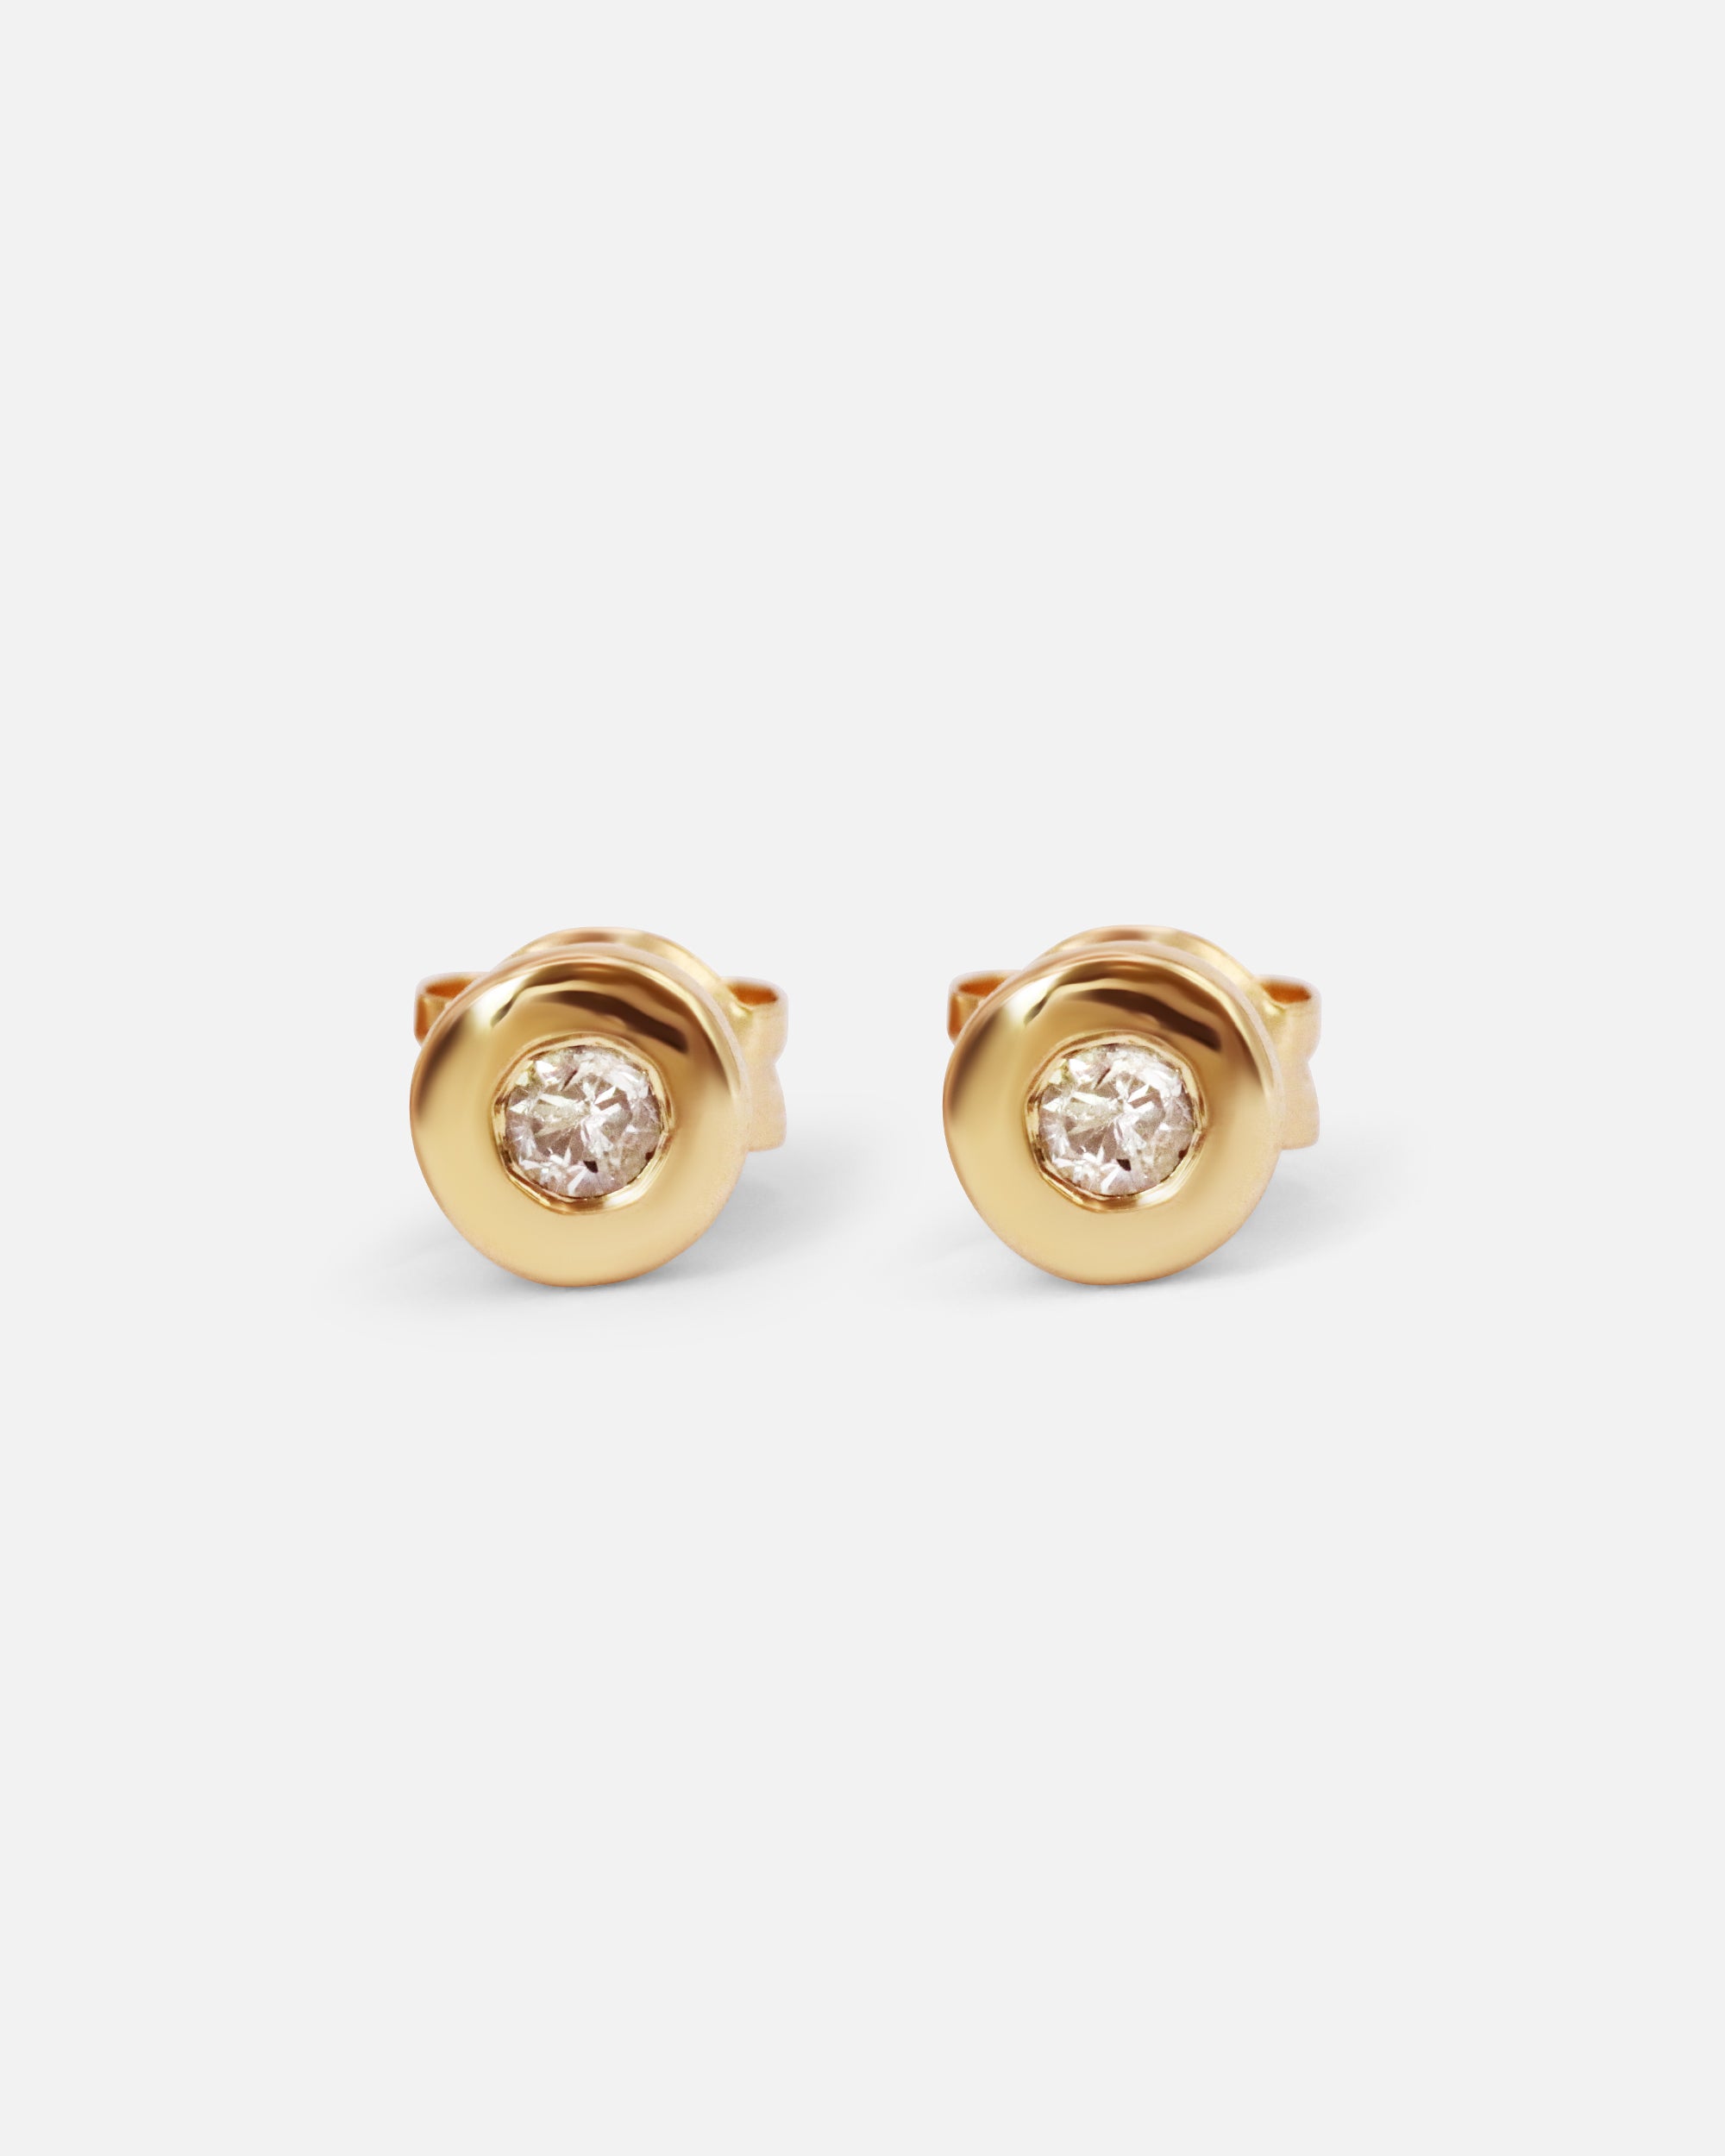 Diamond Pebble / Studs By Nishi in Earrings Category